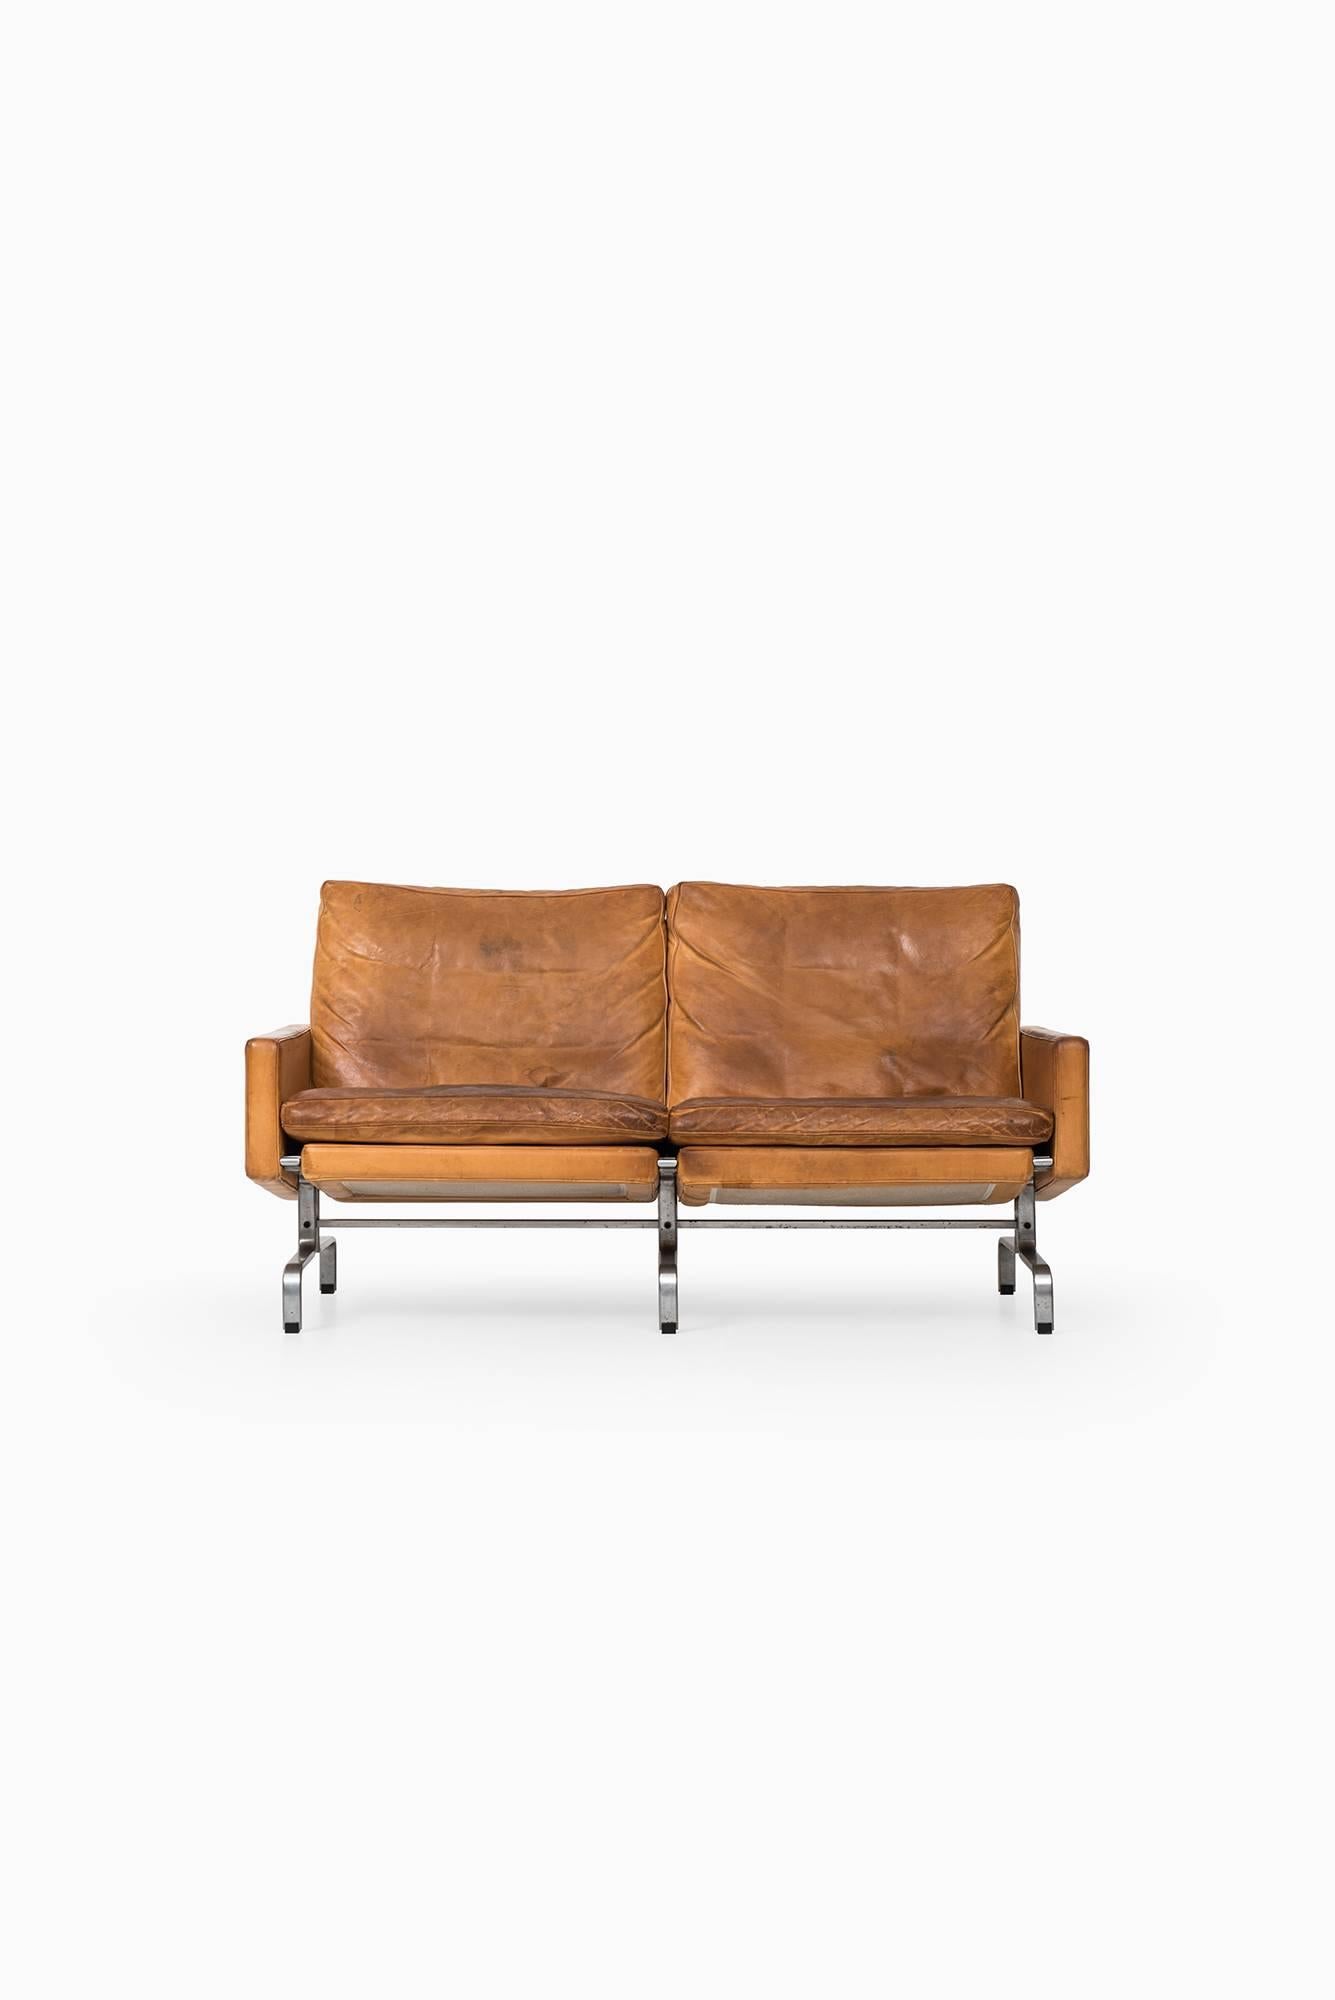 Rare sofa model PK-31/2 designed by Poul Kjærholm. Produced by E. Kold Christensen in Denmark.